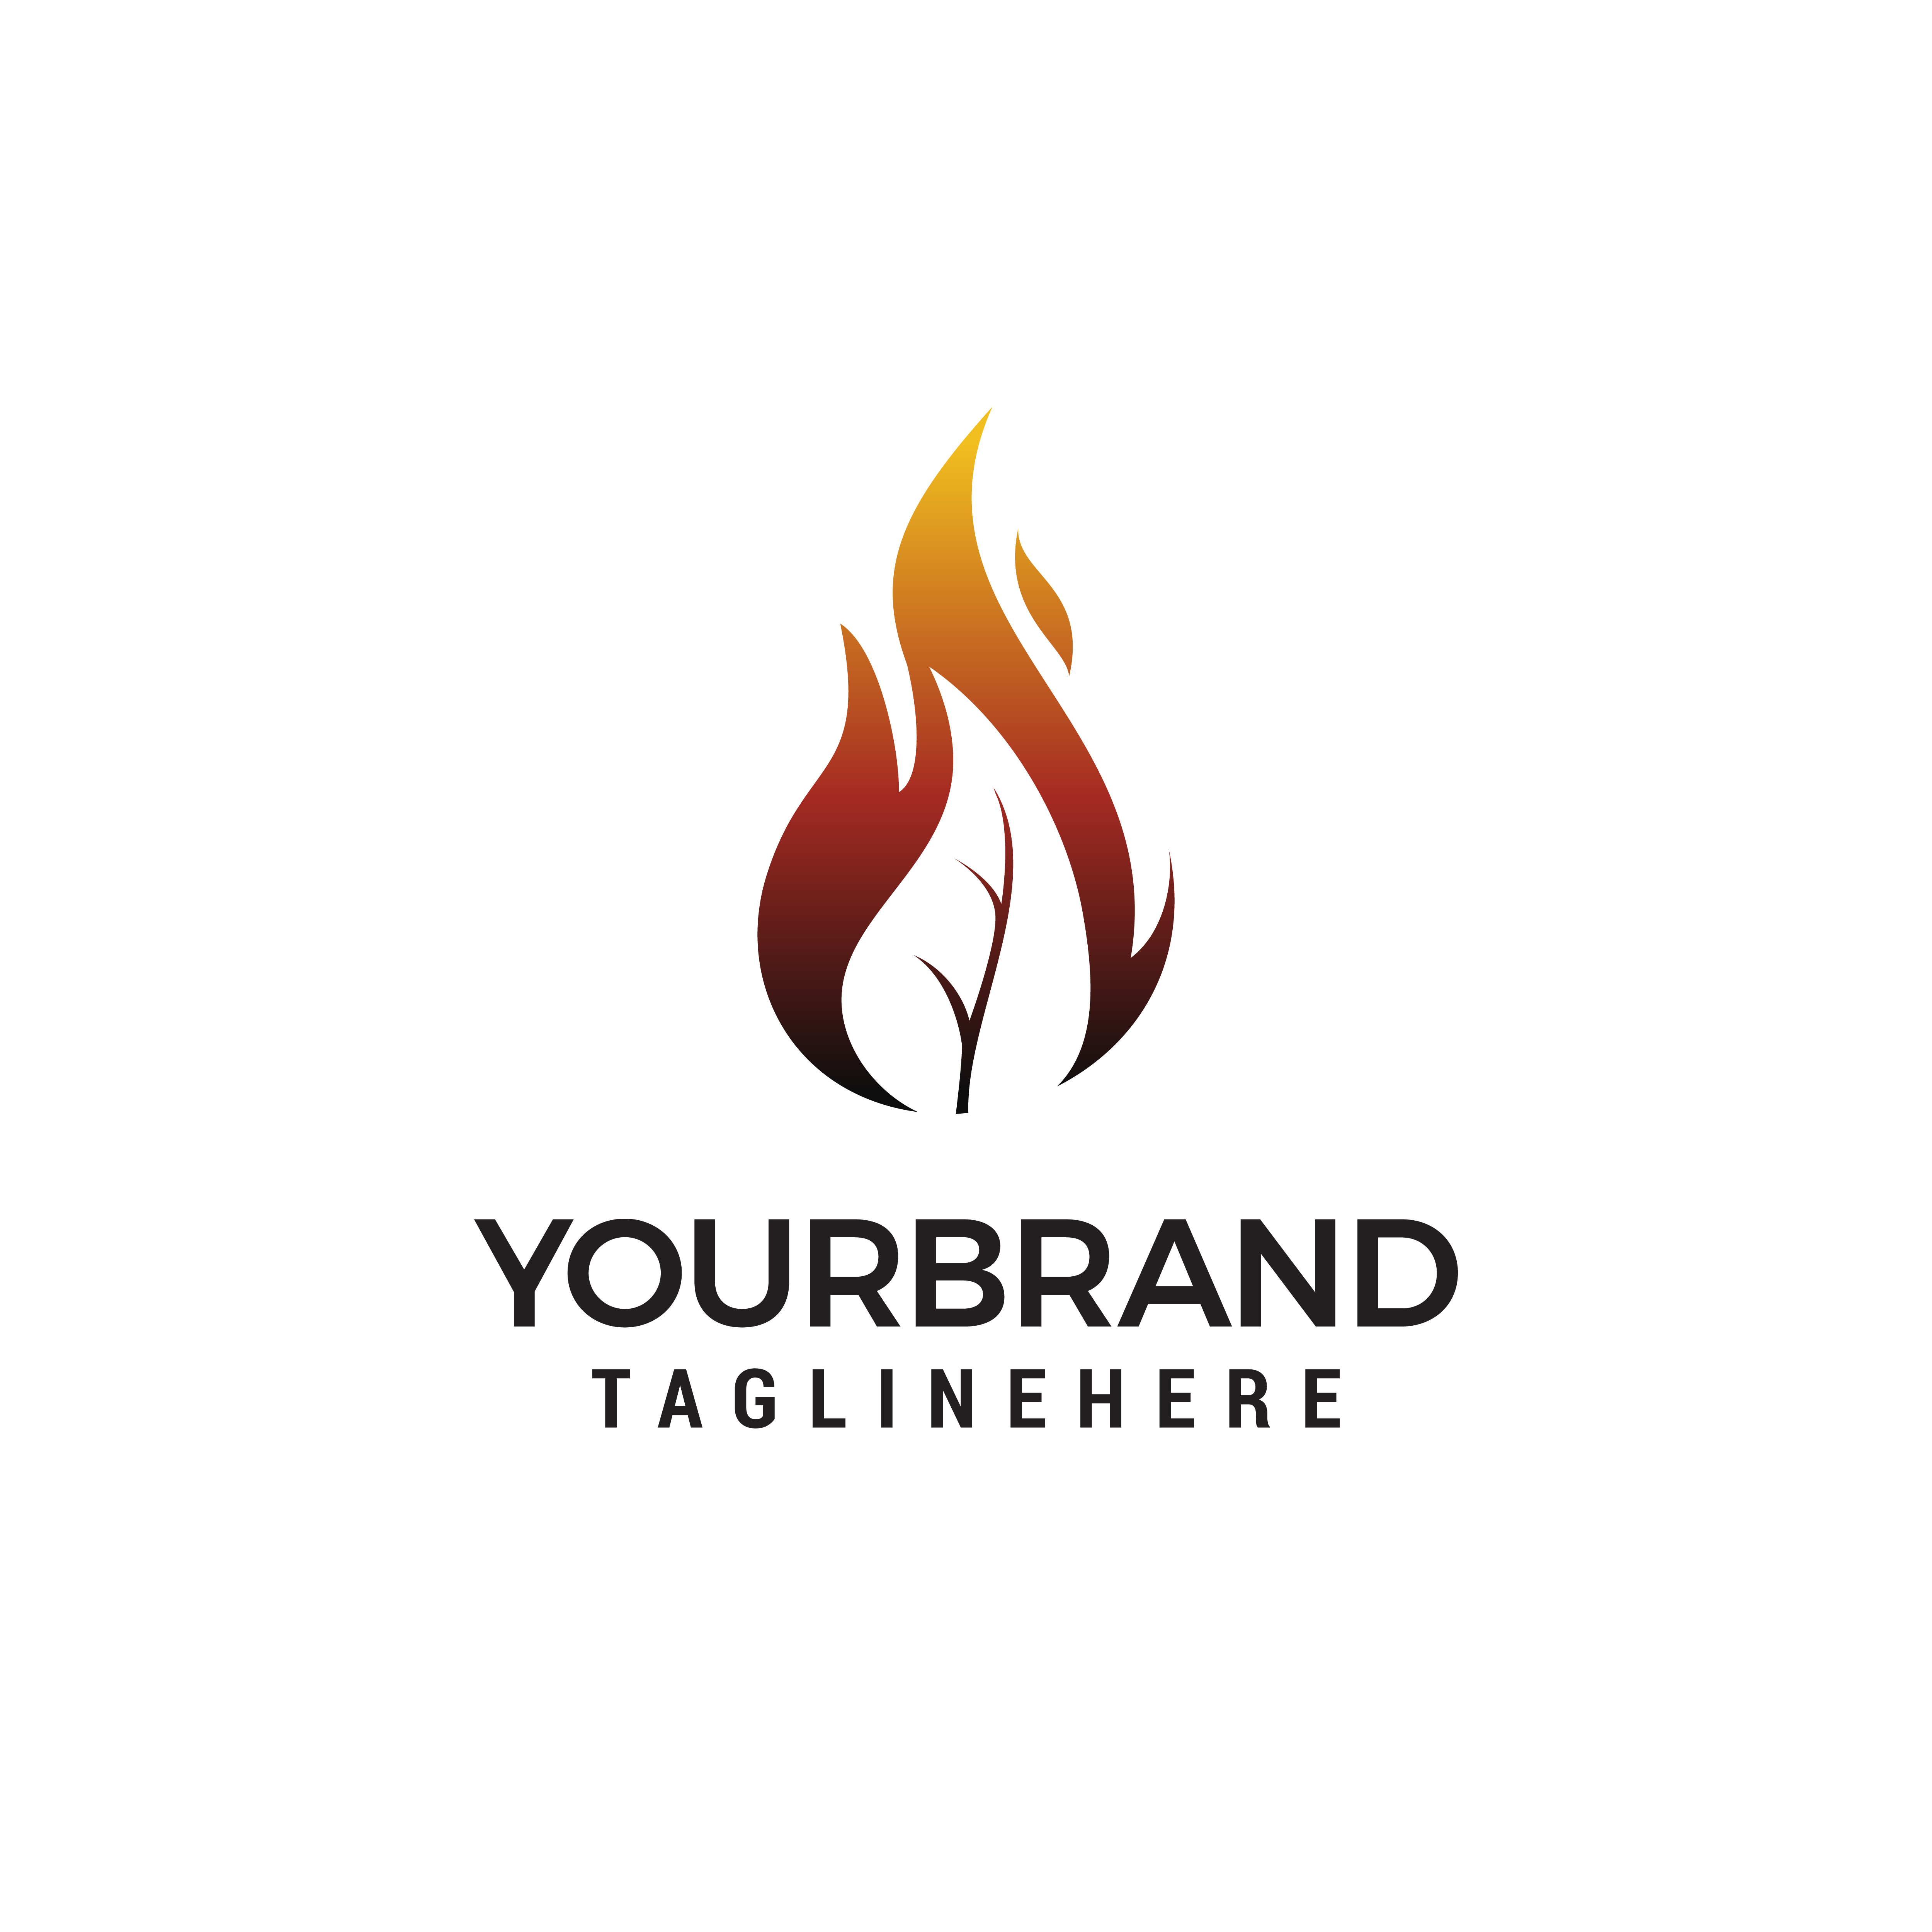 Fire Leaf Flame Logo Design 58 Download Free Vectors Clipart Graphics Vector Art